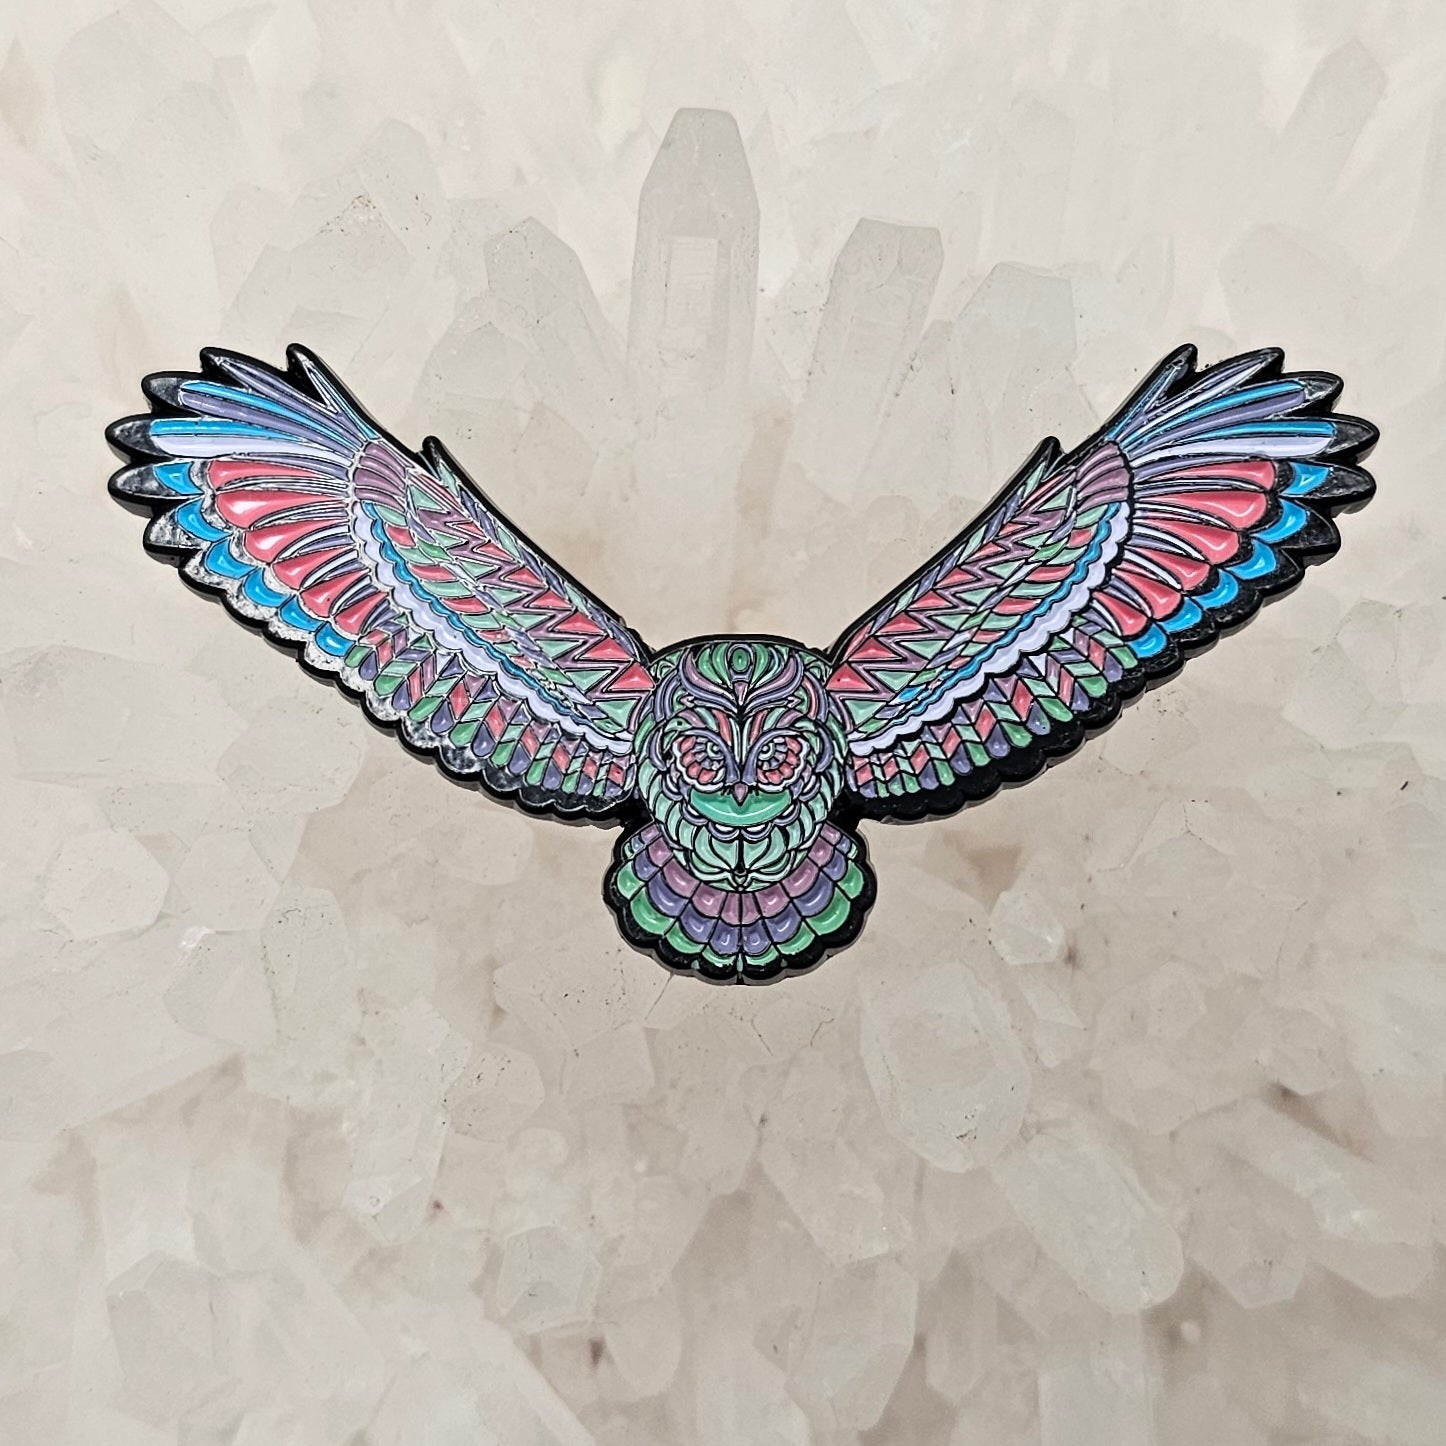 Soaring Owl Bird Of Prey Fluorescence Edition Enamel Pins Hat Pins Lapel Pin Brooch Badge Festival Pin